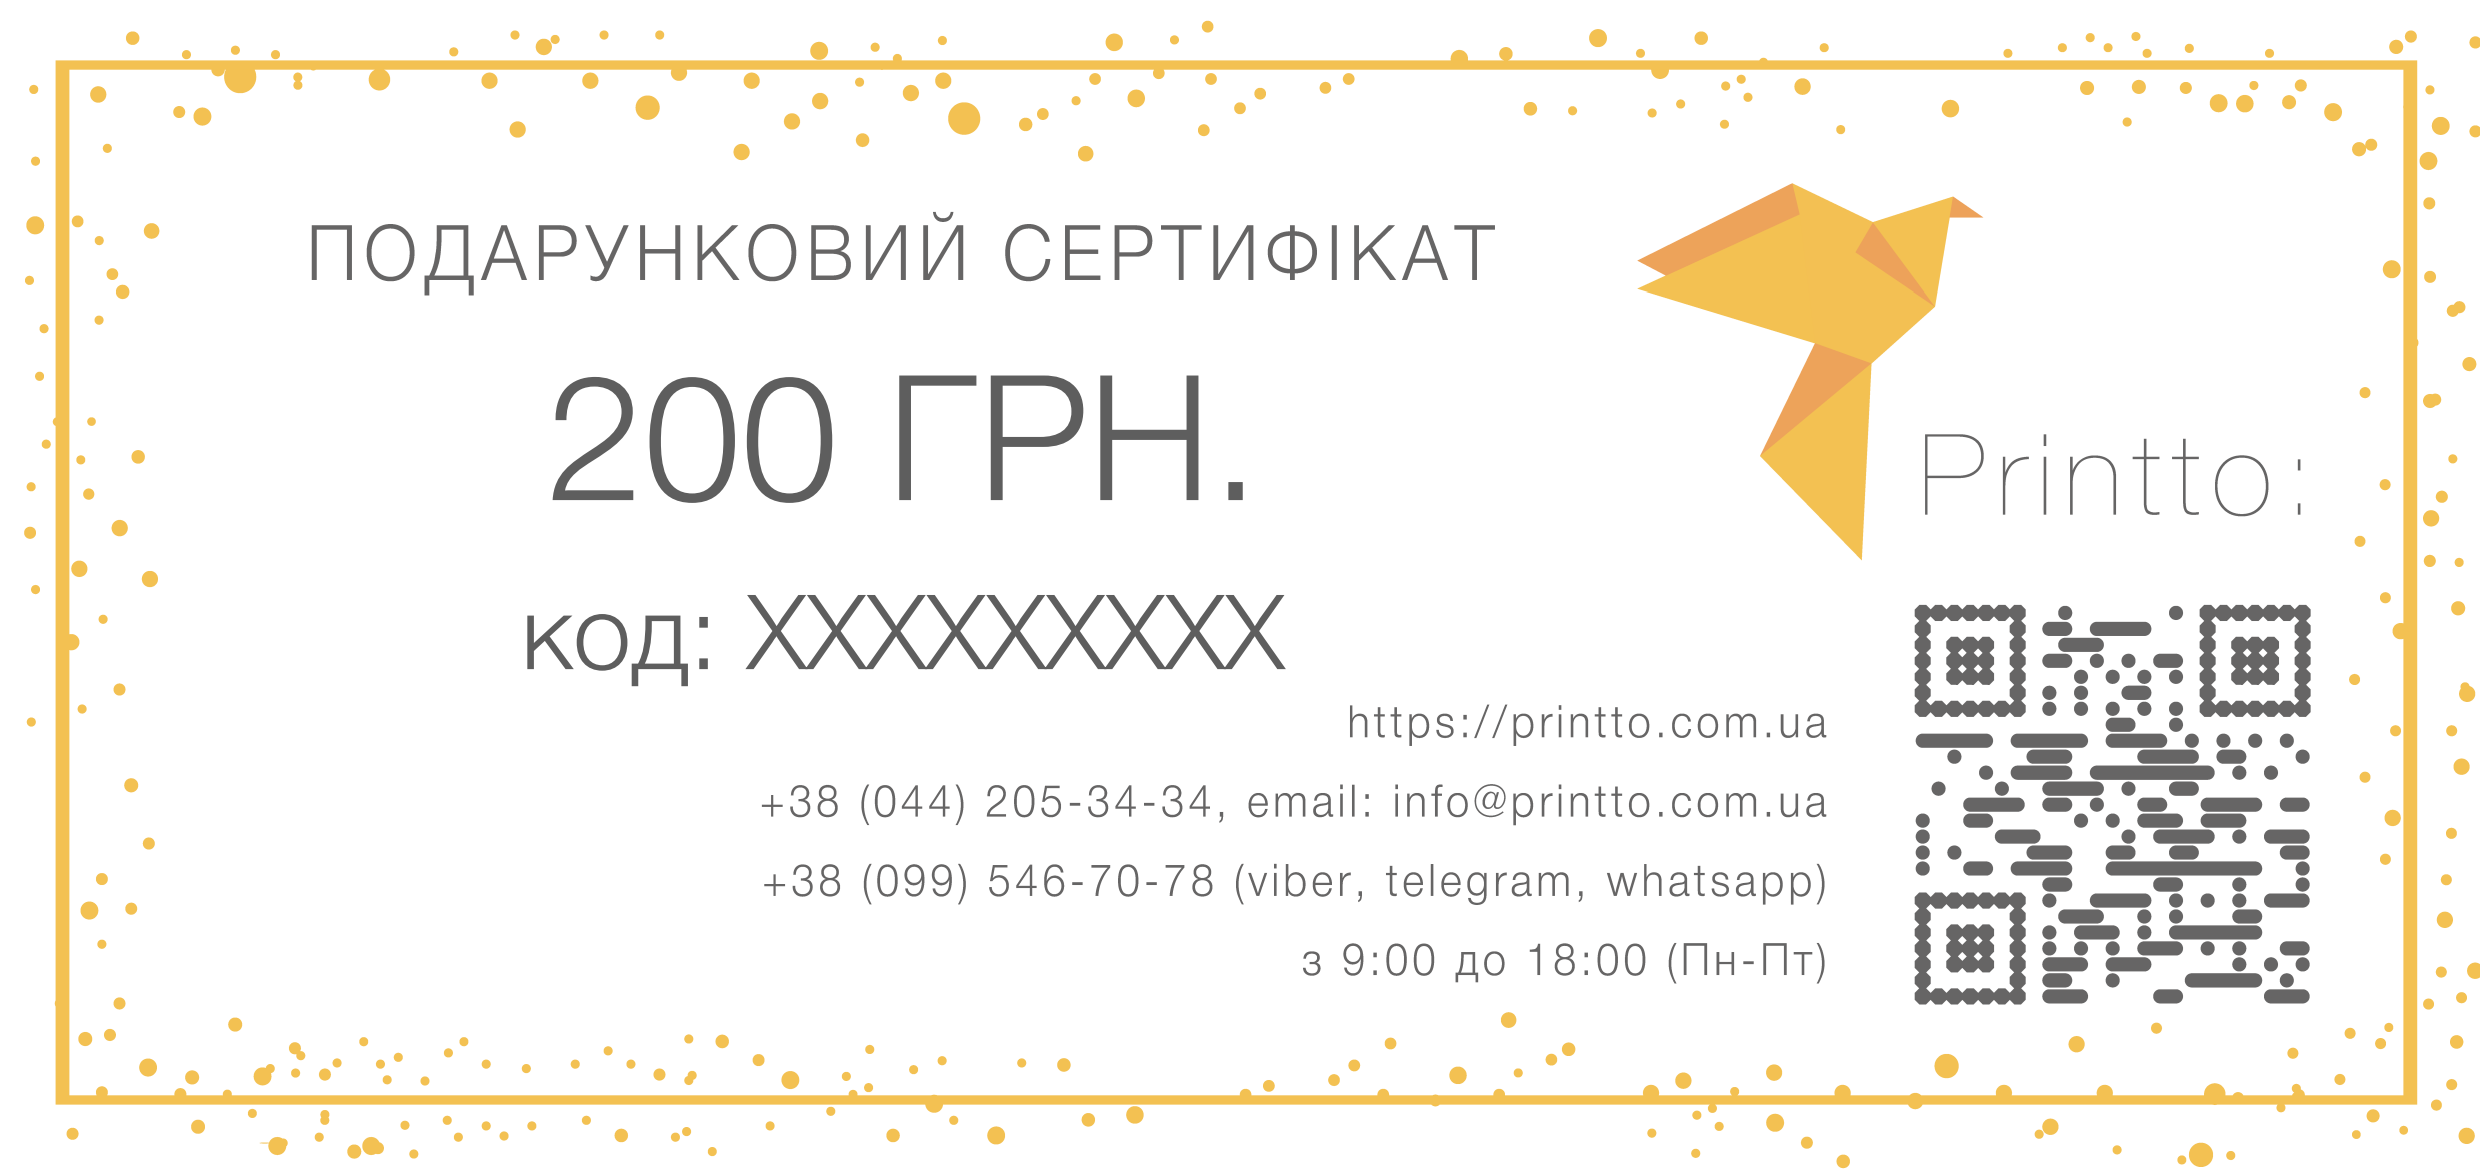 Подарунковий сертифікат на 200 грн. | PrintTo: